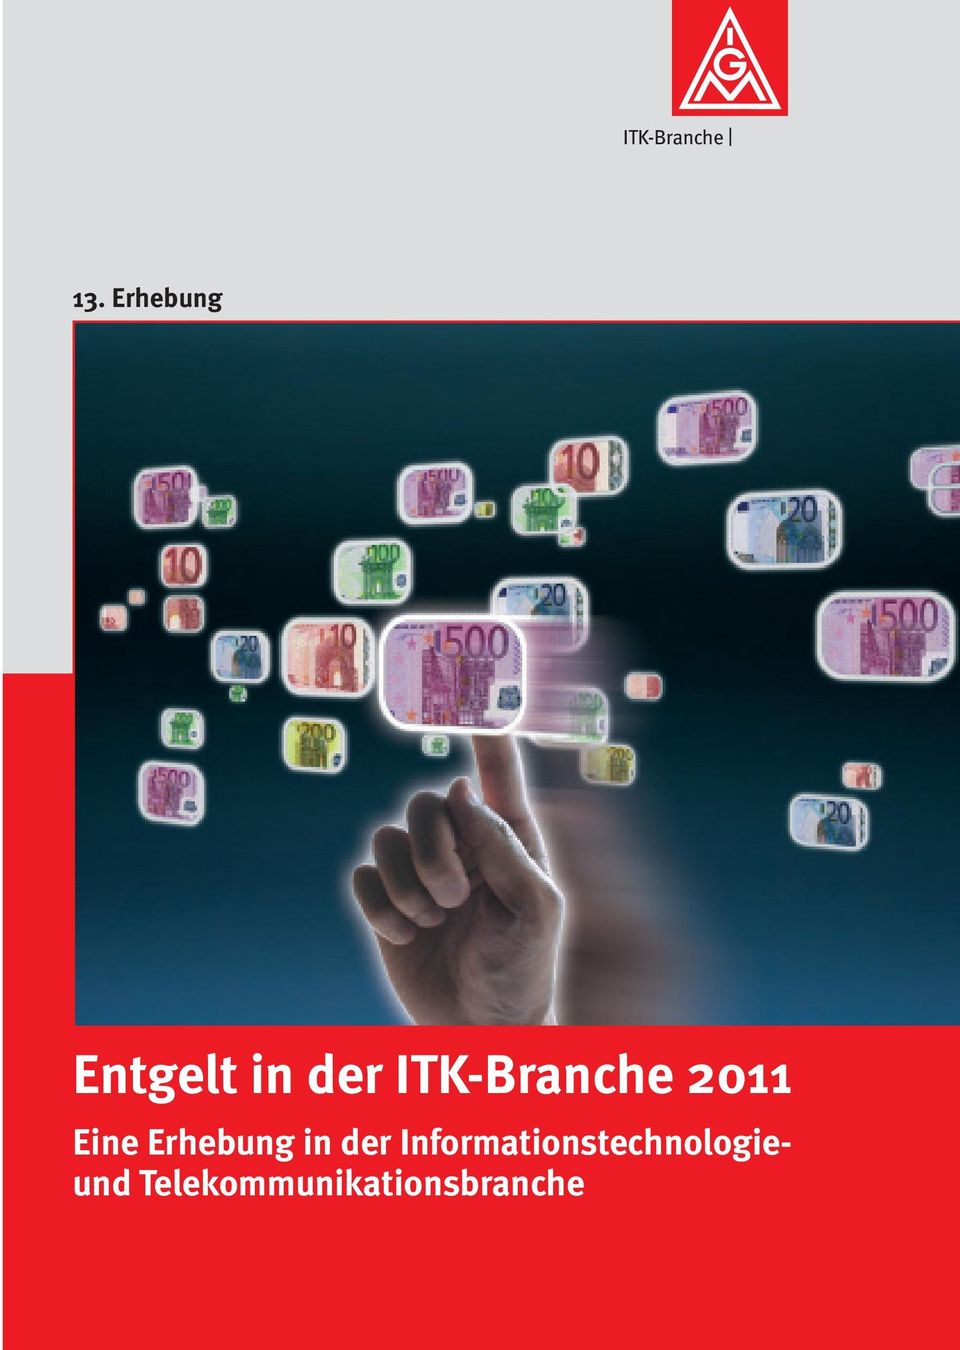 ITK-Branche 2011 Eine Erhebung